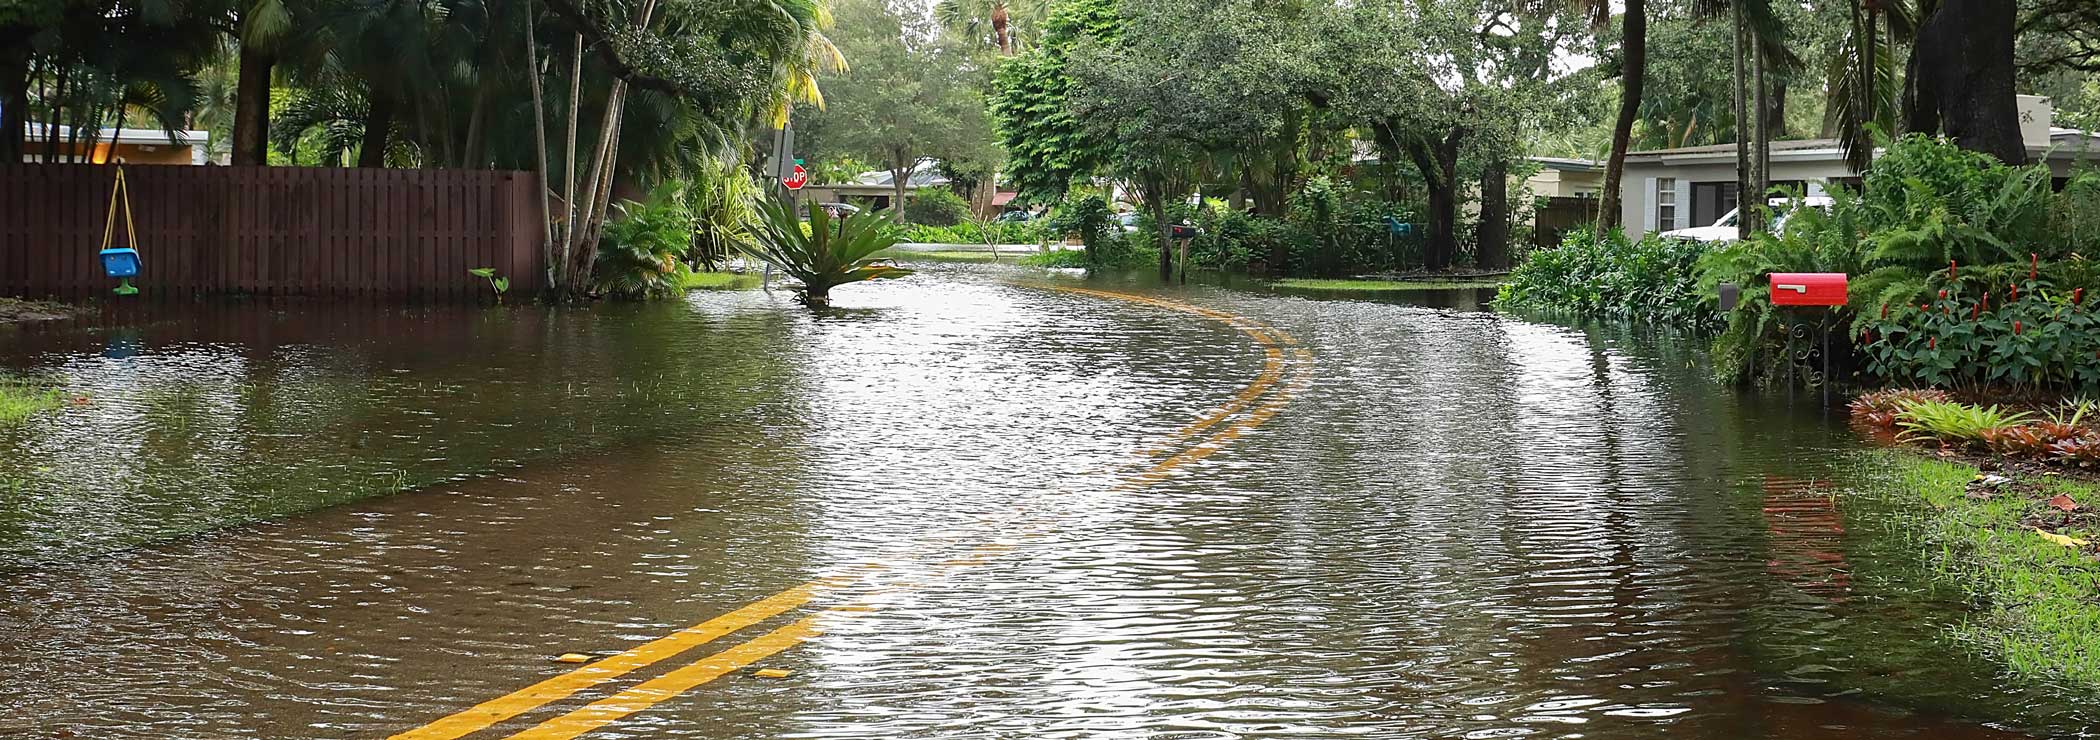 Street under water, flood